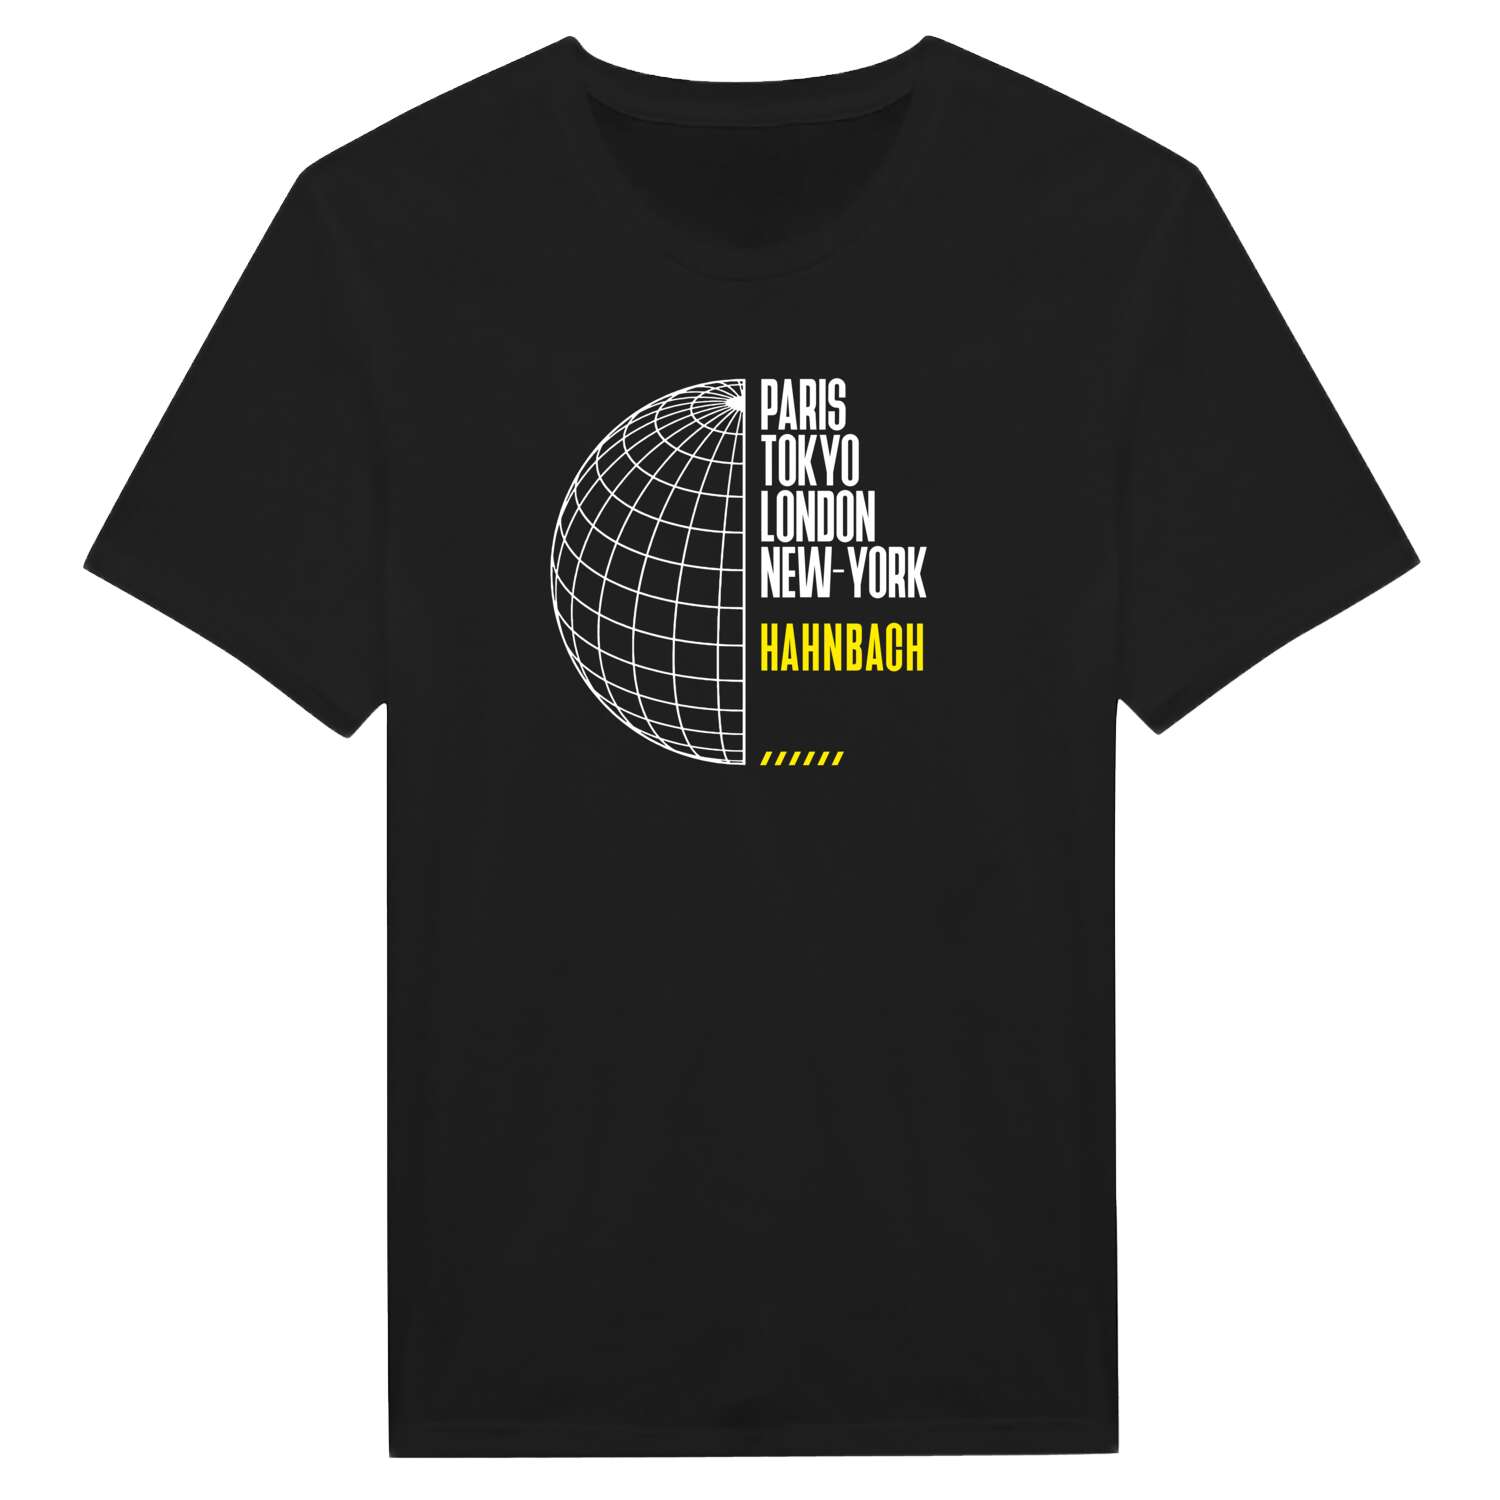 Hahnbach T-Shirt »Paris Tokyo London«